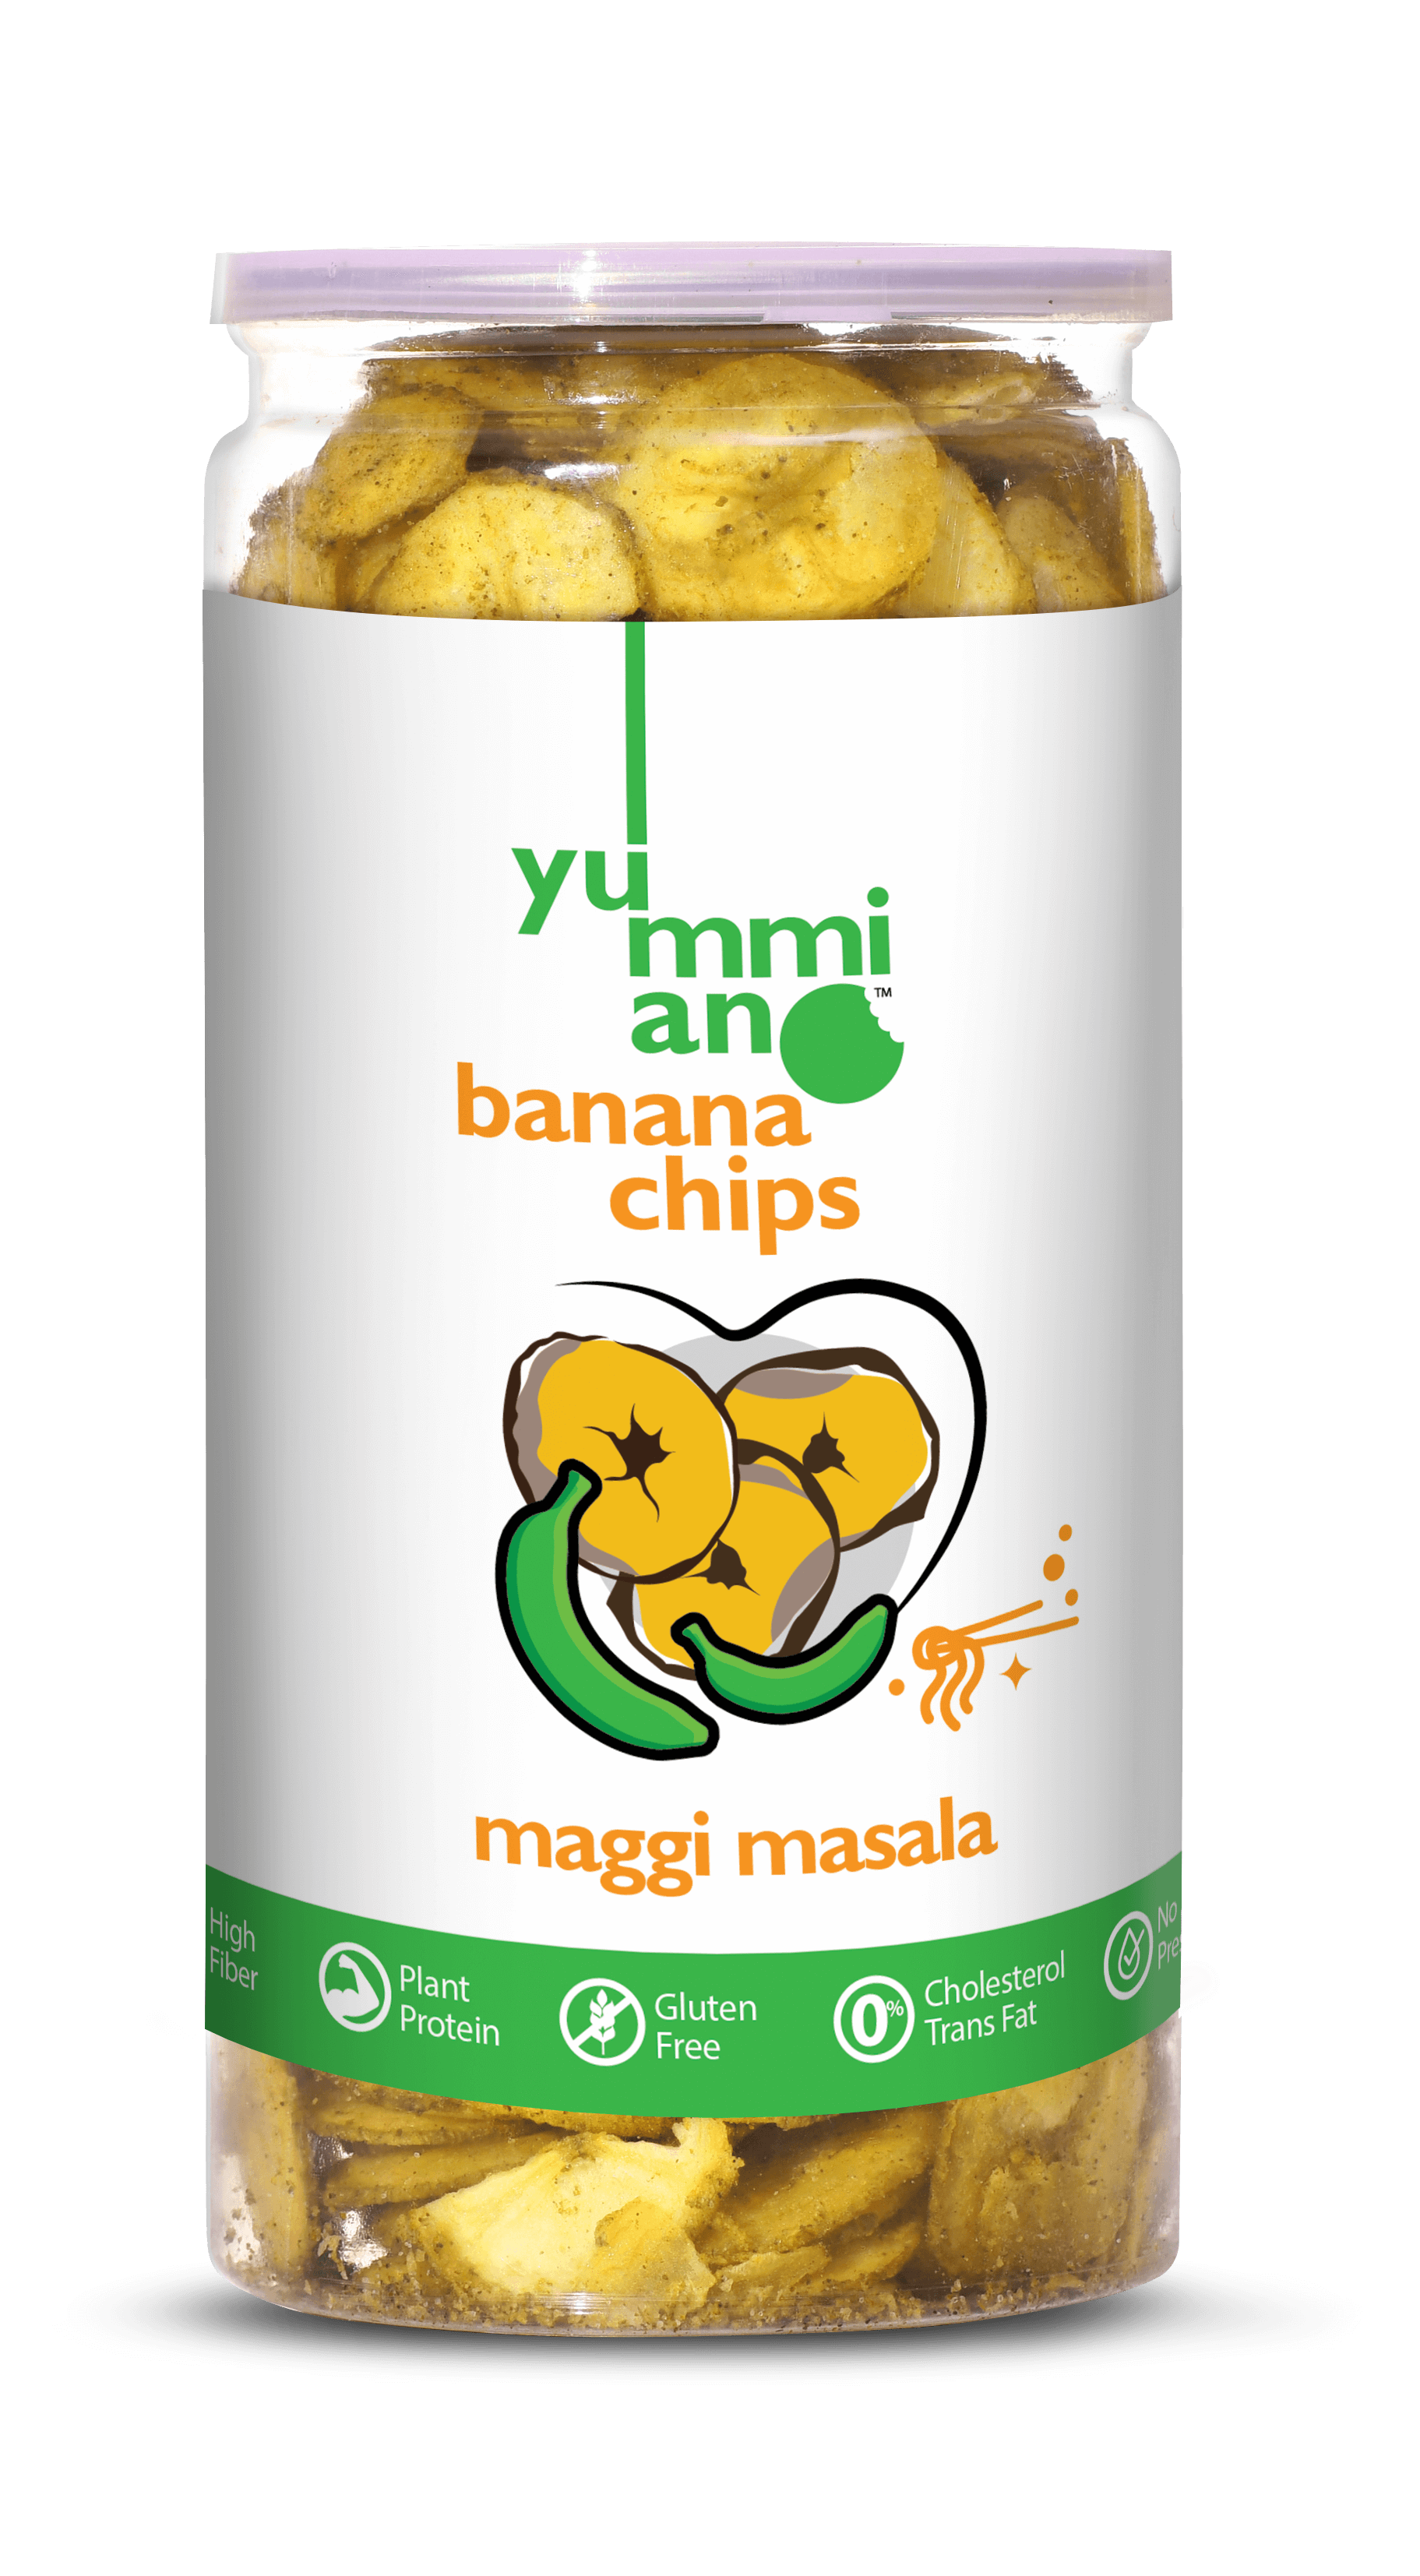 Yummiano Banana Chips â€šÃ„Ã¶âˆšÃ‘âˆšÂ¨ Maggi Masala Image